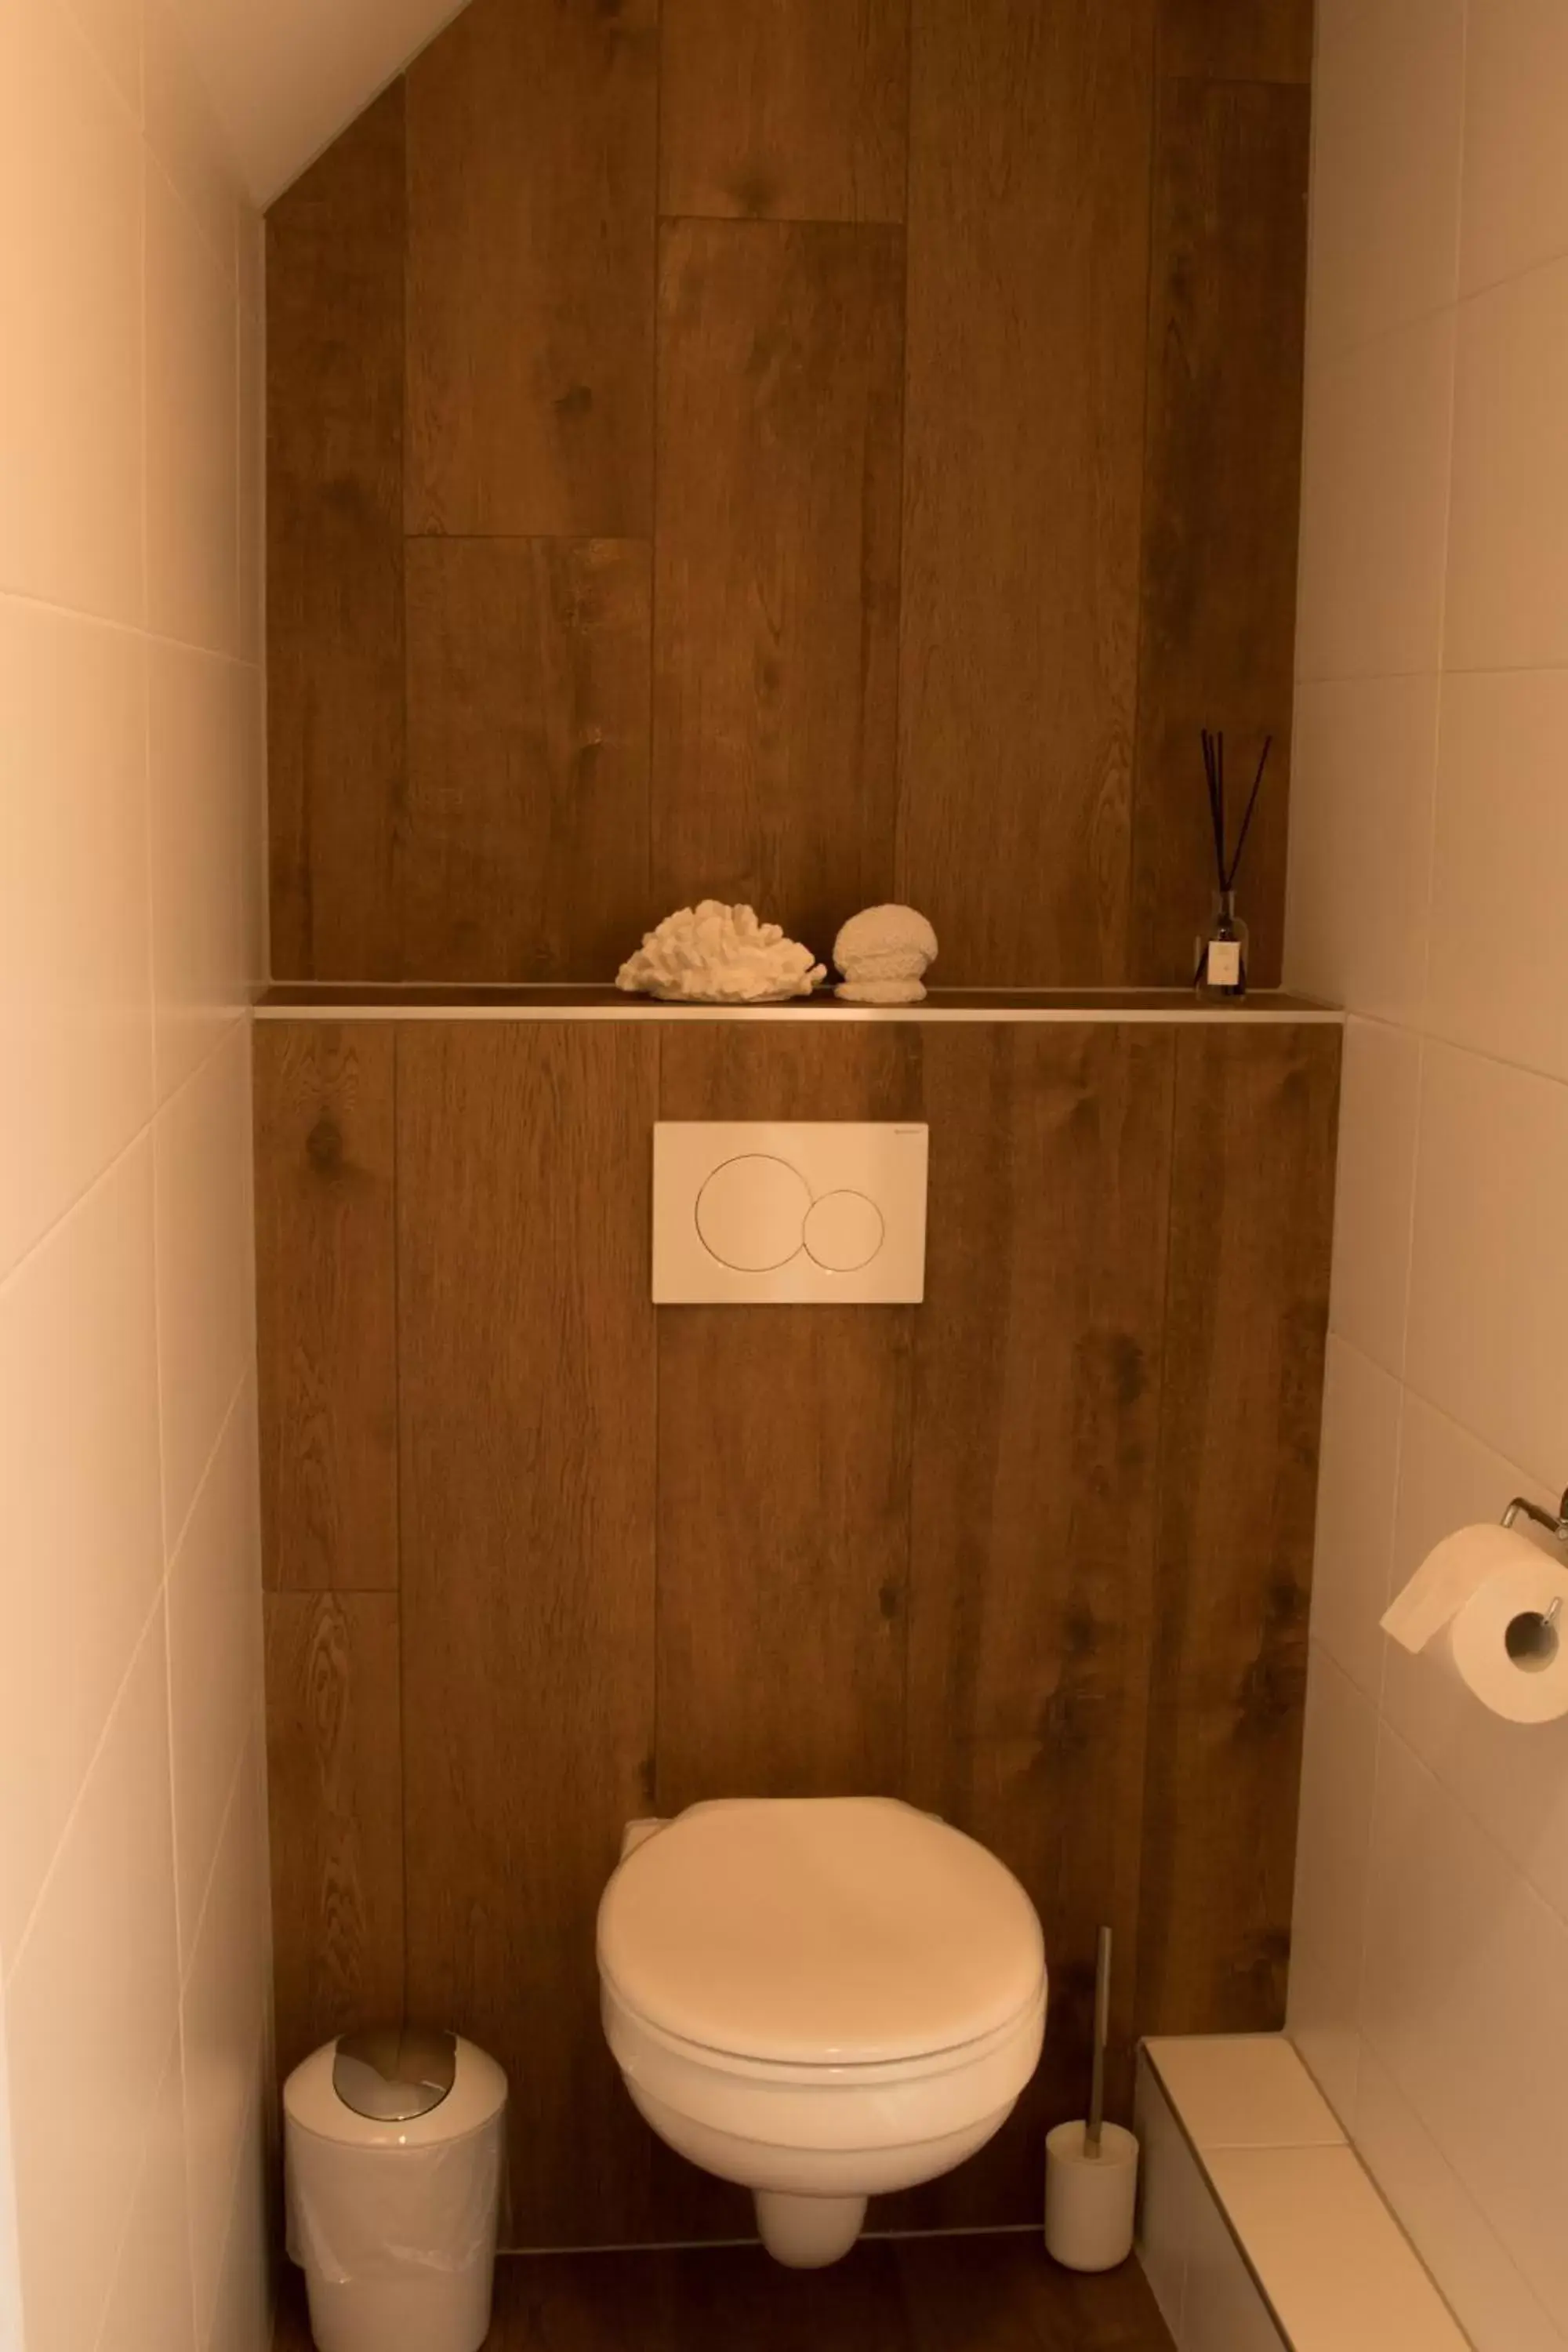 Bathroom in BnB Purmerland